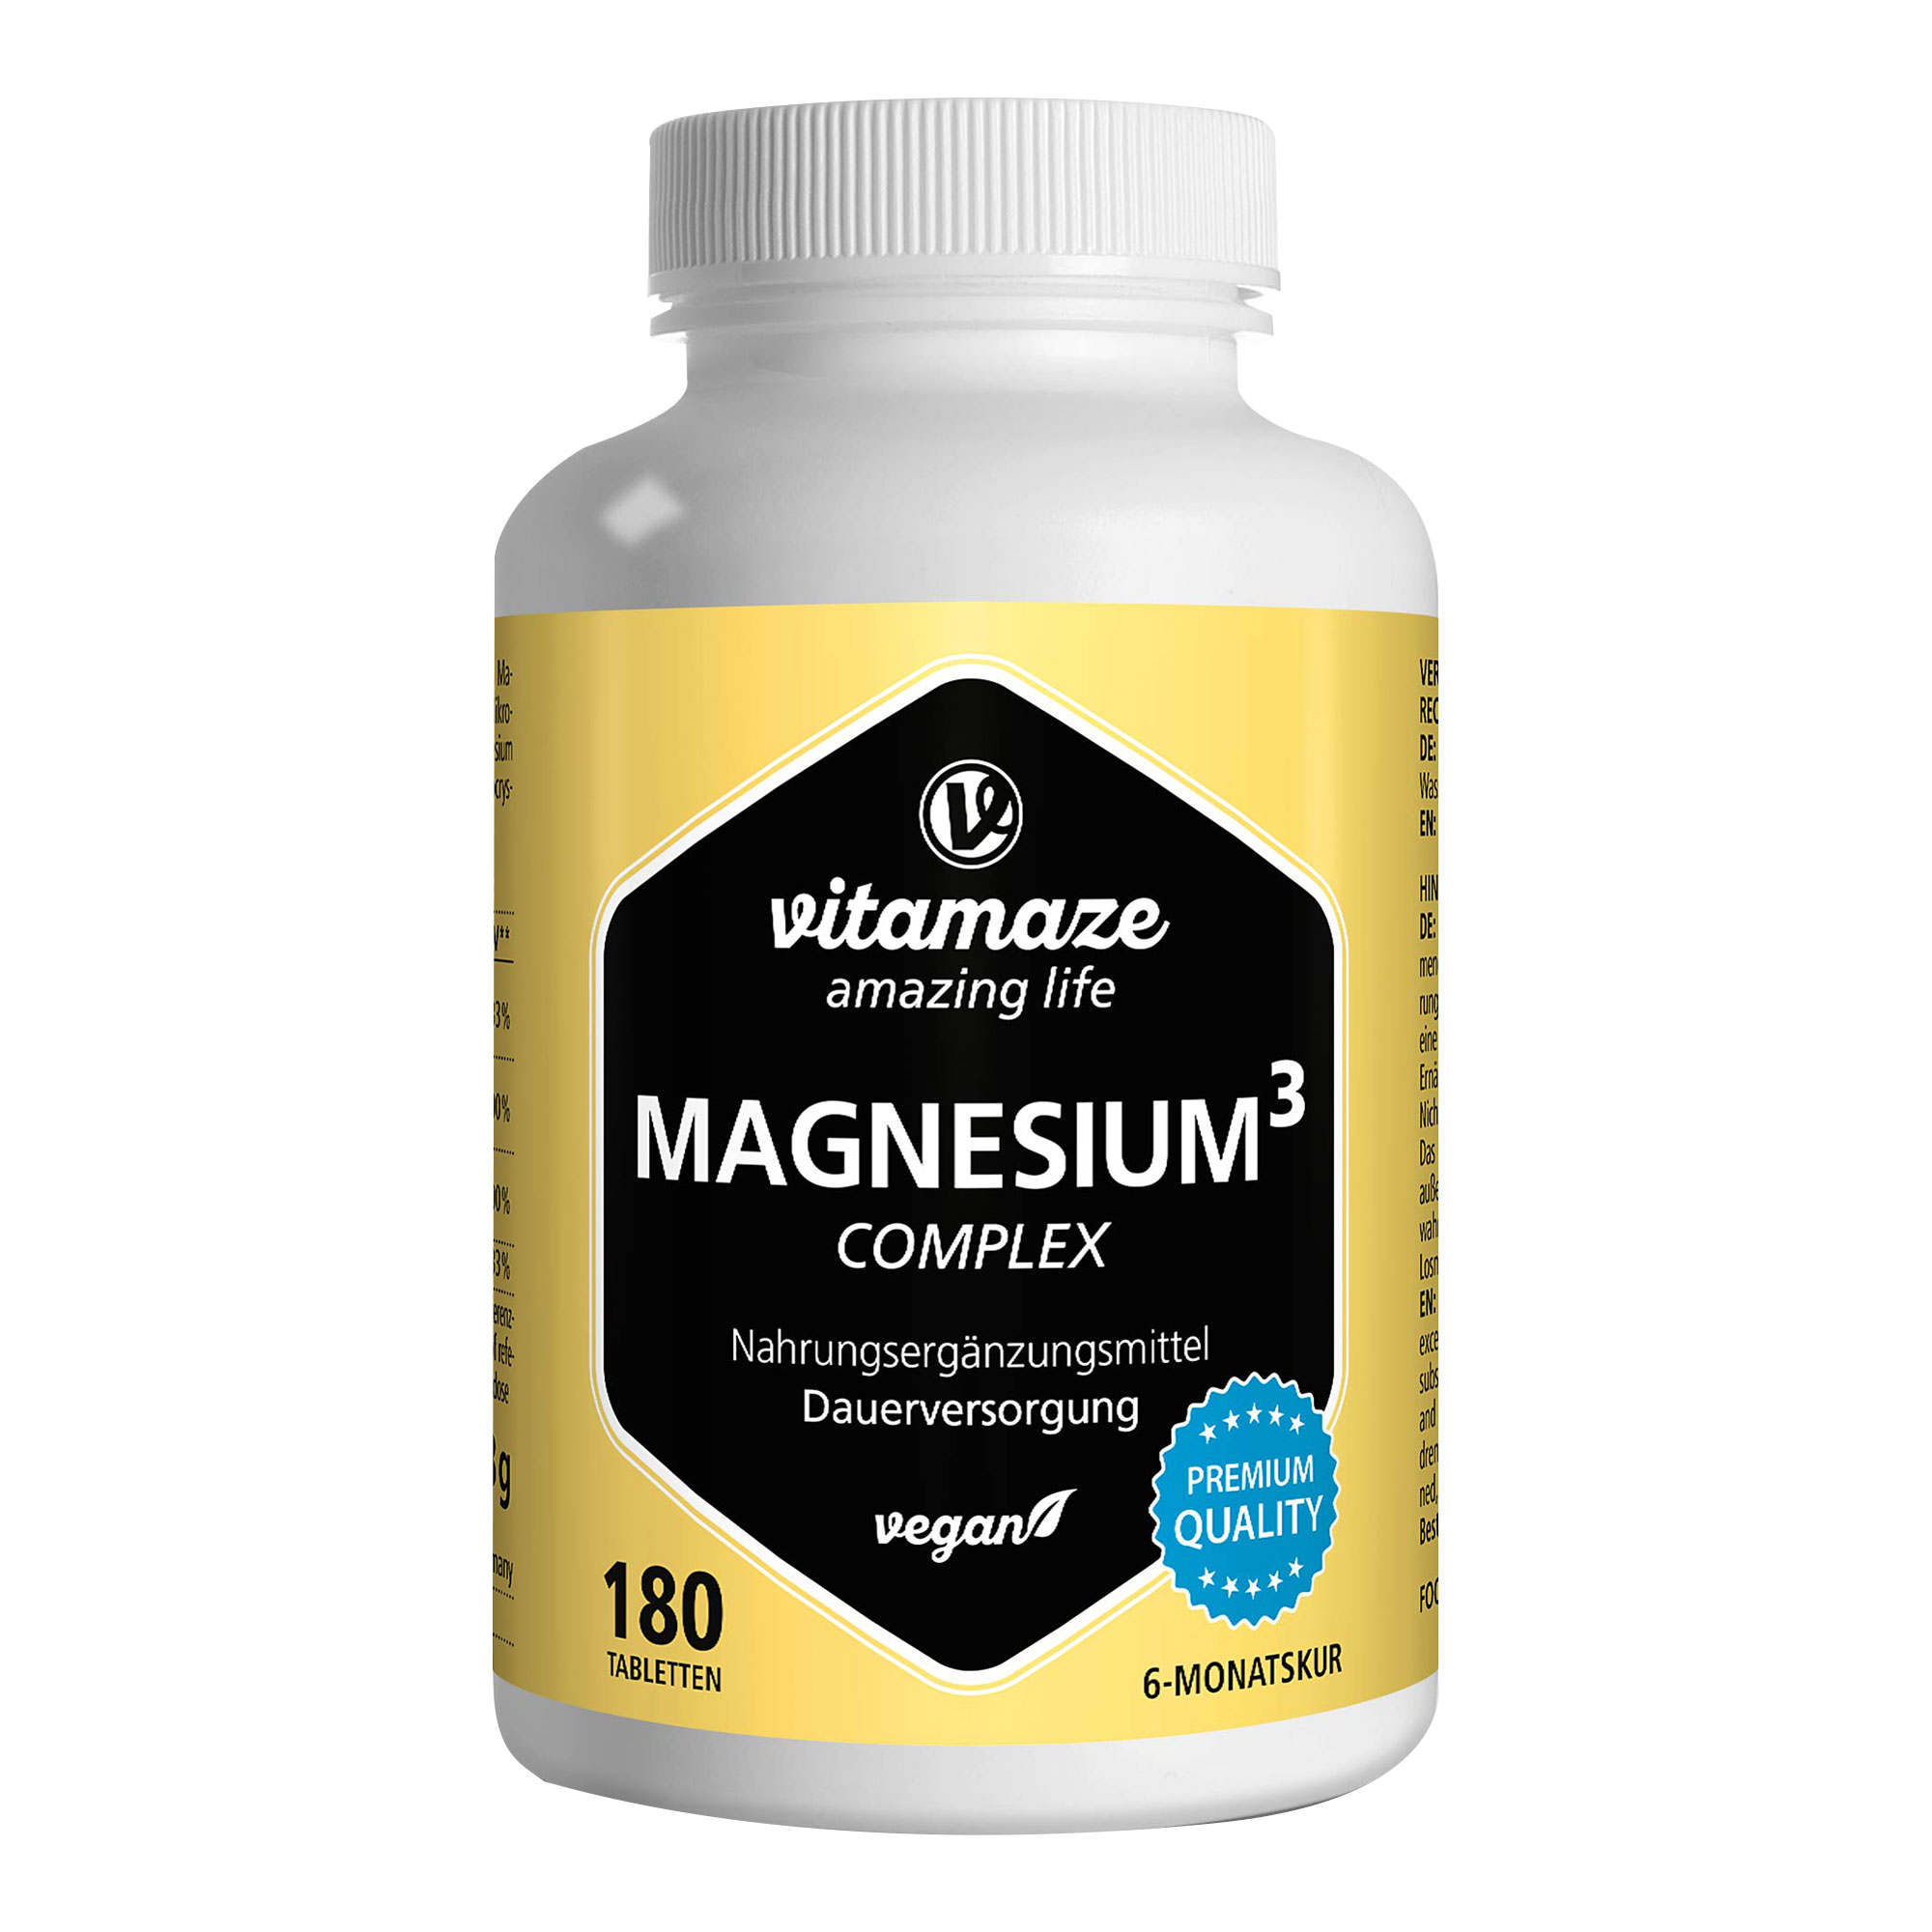 Nahrungsergänzungsmittel mit Magnesium. Für den Energiehaushalt, die Knochen und das Nervensystem.